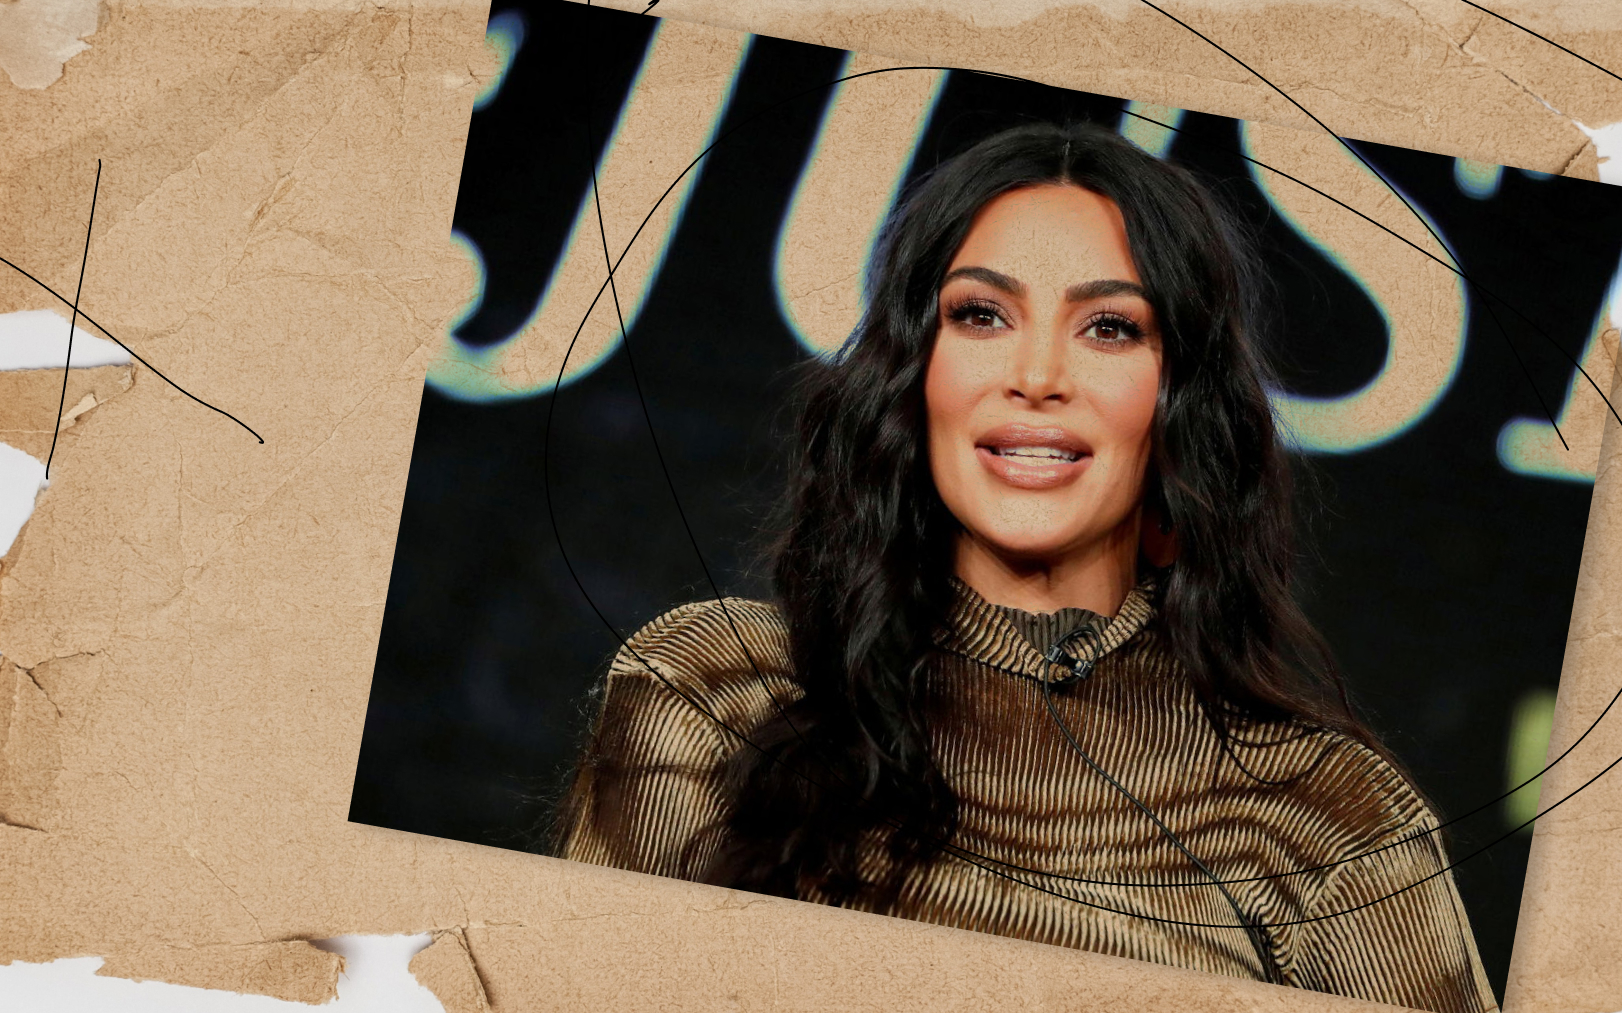 La star américaine Kim Kardashian avait été braquée par des hommes qui lui avaient dérobé ses bijoux lors d'un séjour à Paris, en 2016. REUTERS/Mario Anzuoni